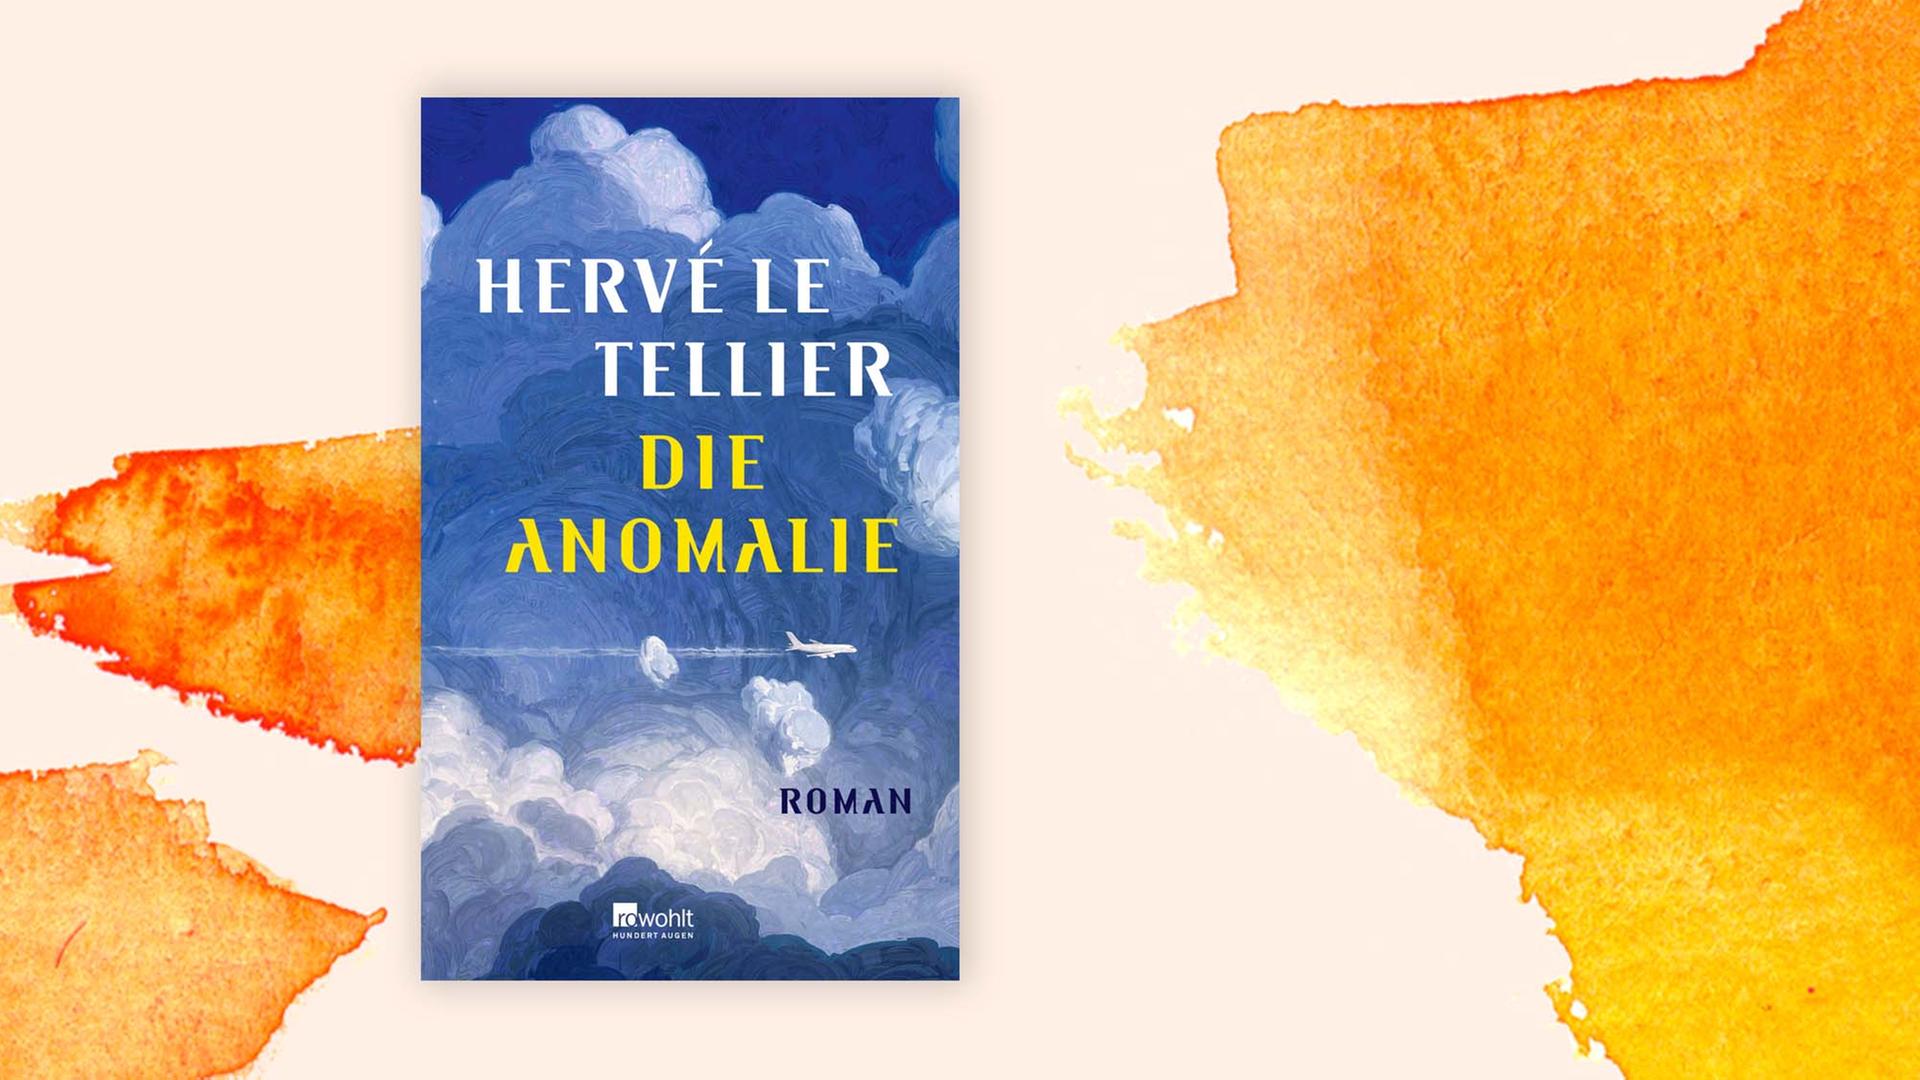 Das Cover des Buches "Die Anomalie" von Hervé Le Tellier auf pastelligem Untergrund.